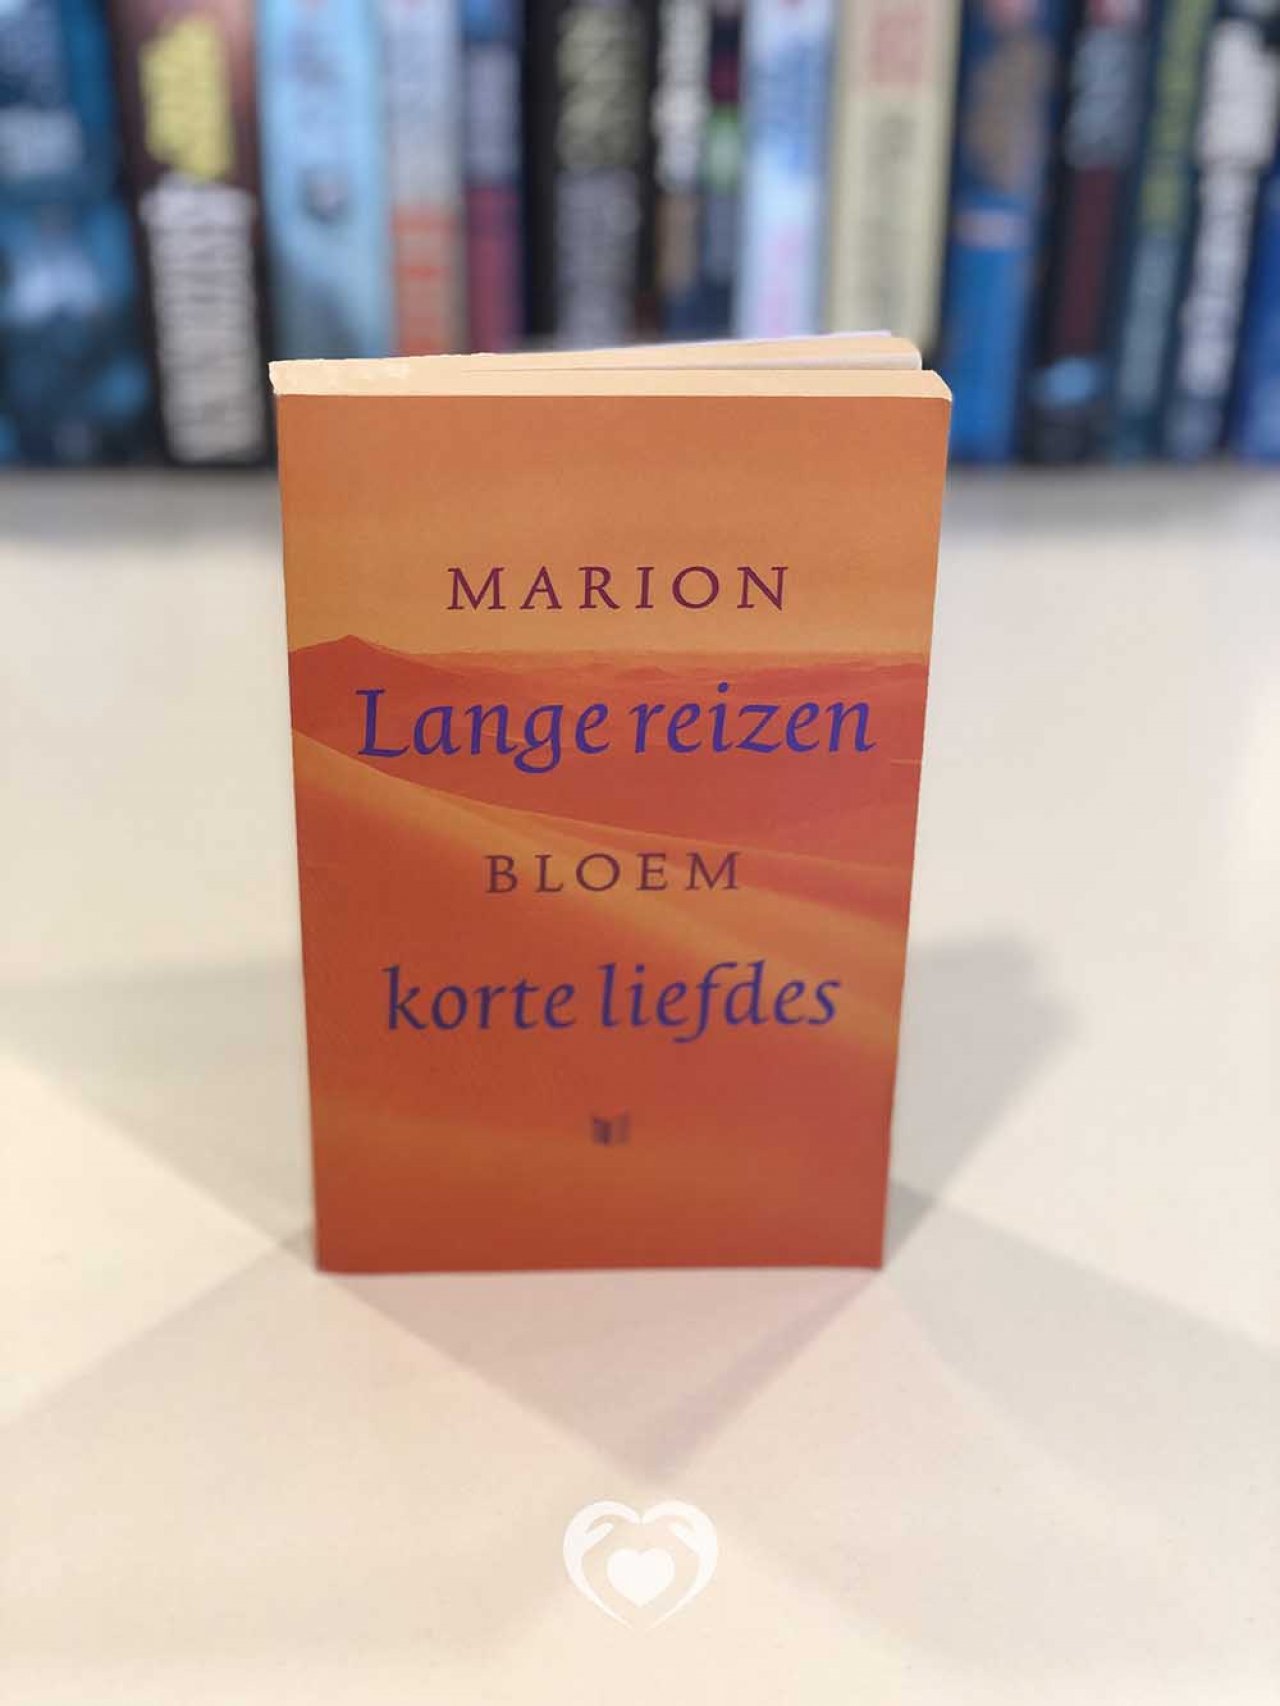 Lange reizen - Marion Bloem - boek | nofam.org